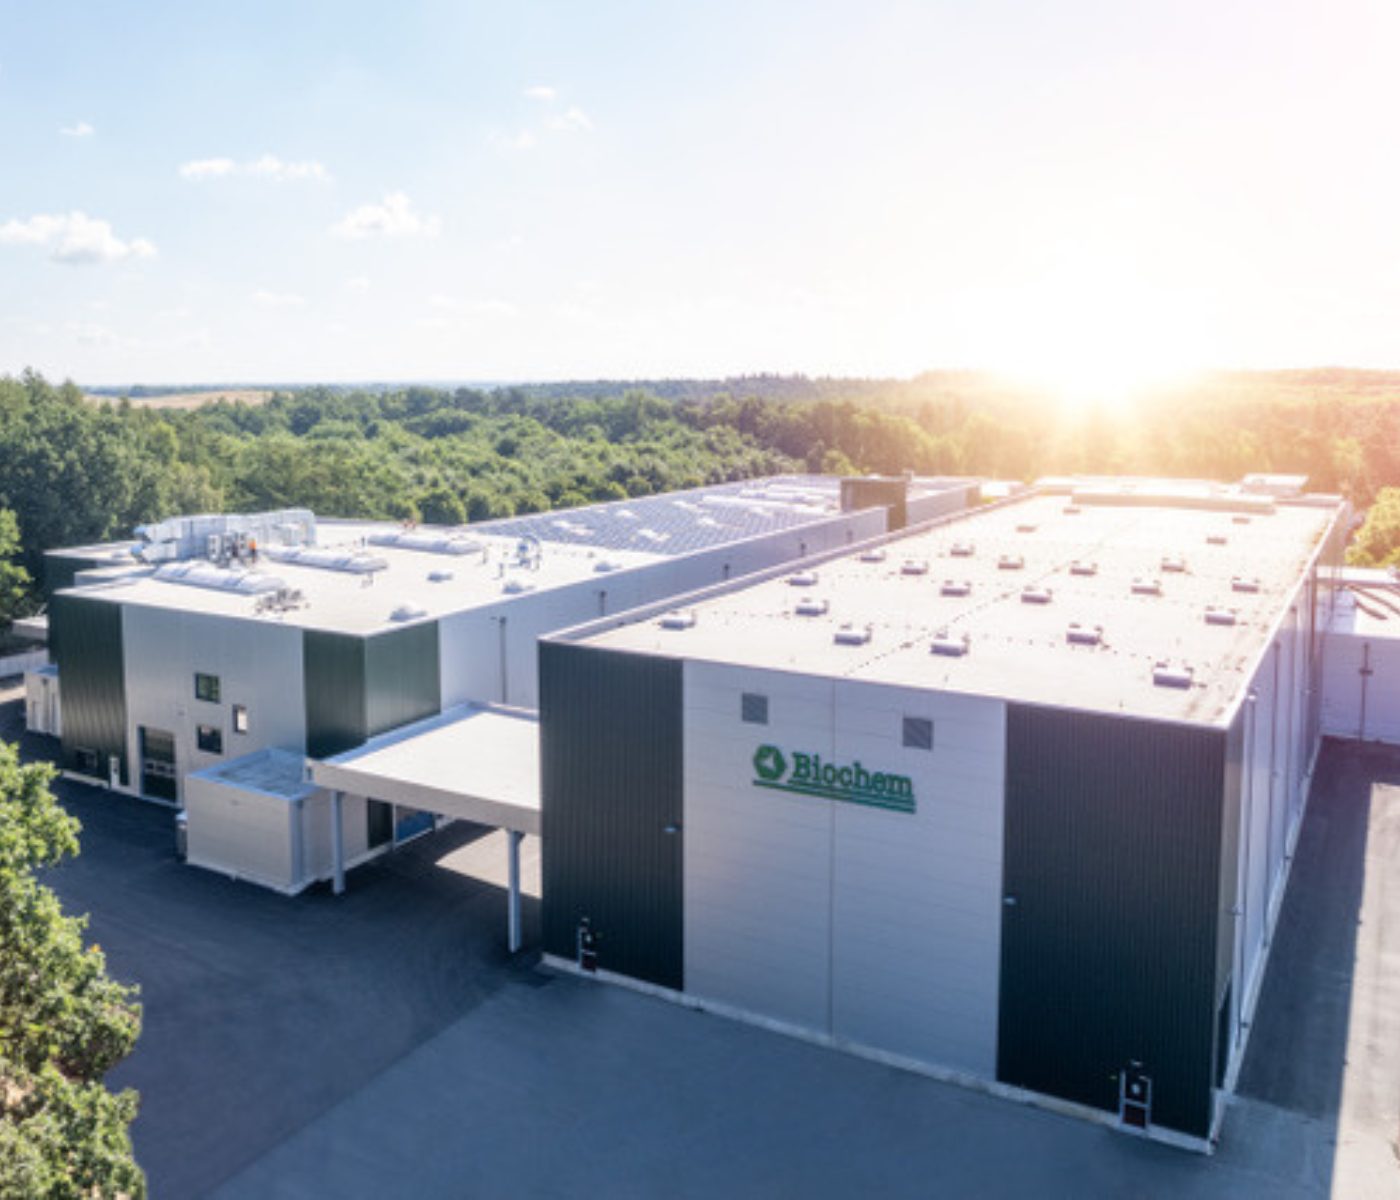 Biochem Anuncia a Abertura de Nova Fábrica em Lohne, Alemanha